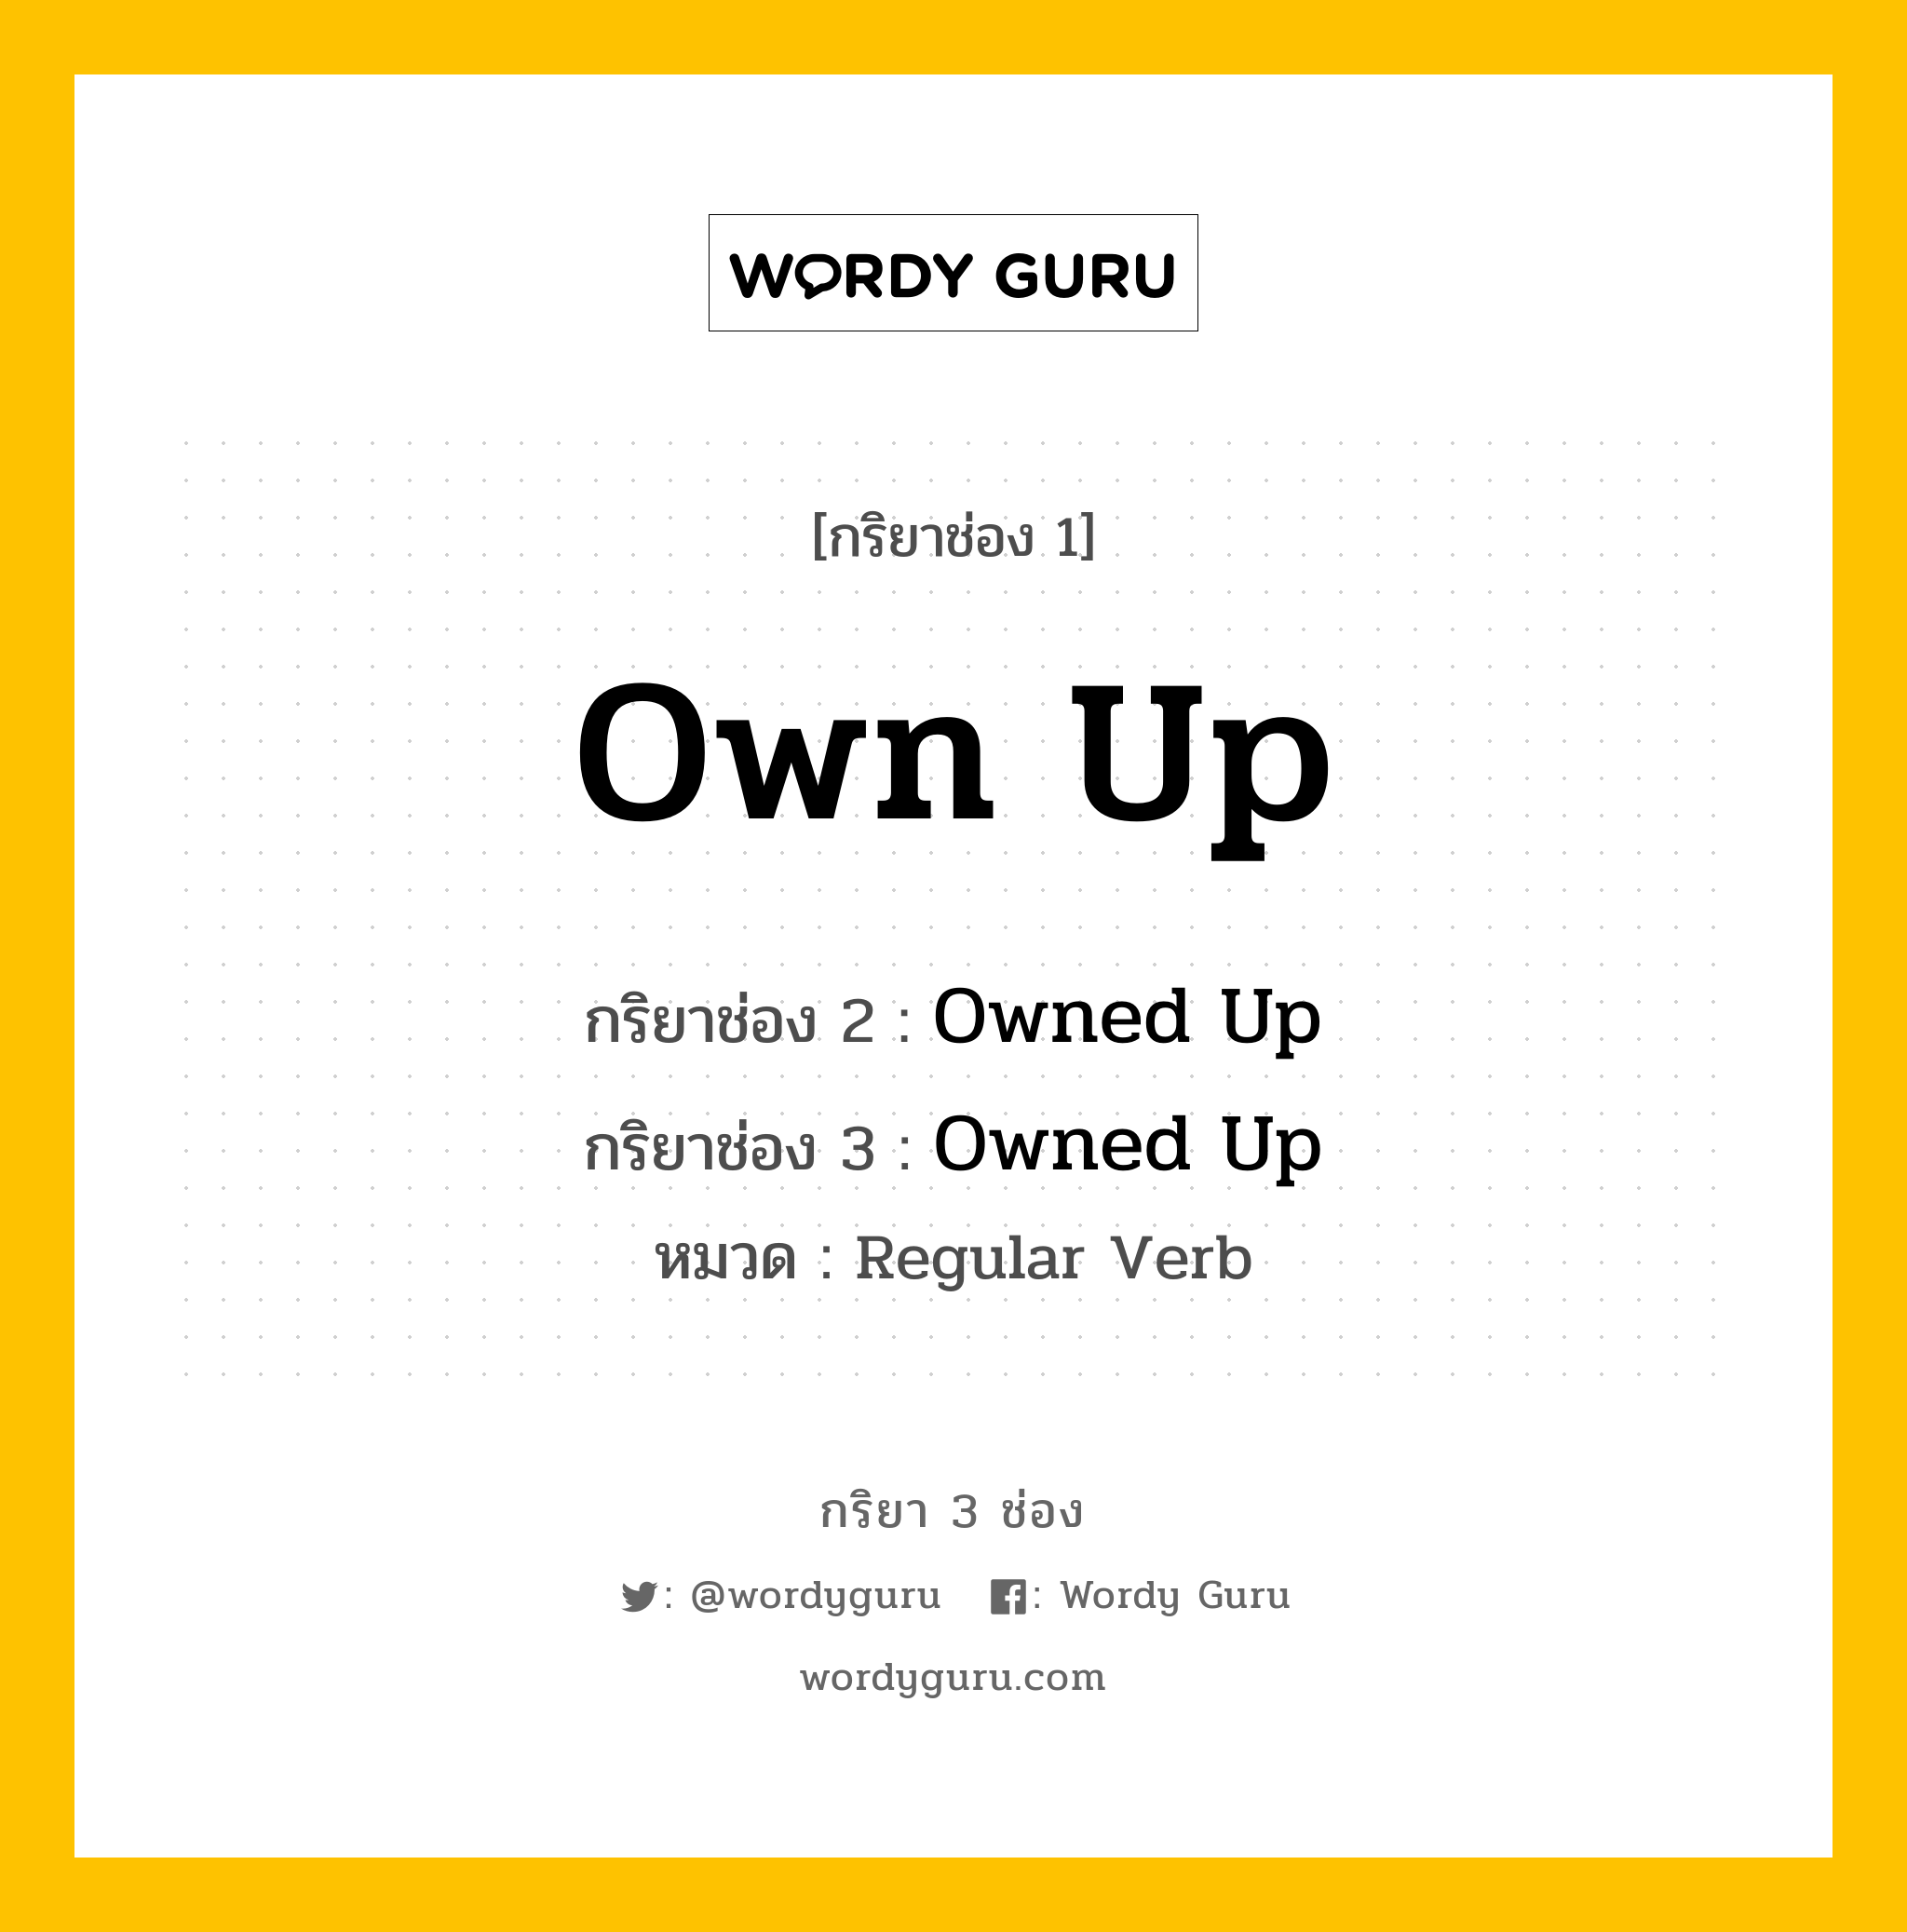 กริยา 3 ช่อง: Own Up ช่อง 2 Own Up ช่อง 3 คืออะไร, กริยาช่อง 1 Own Up กริยาช่อง 2 Owned Up กริยาช่อง 3 Owned Up หมวด Regular Verb หมวด Regular Verb